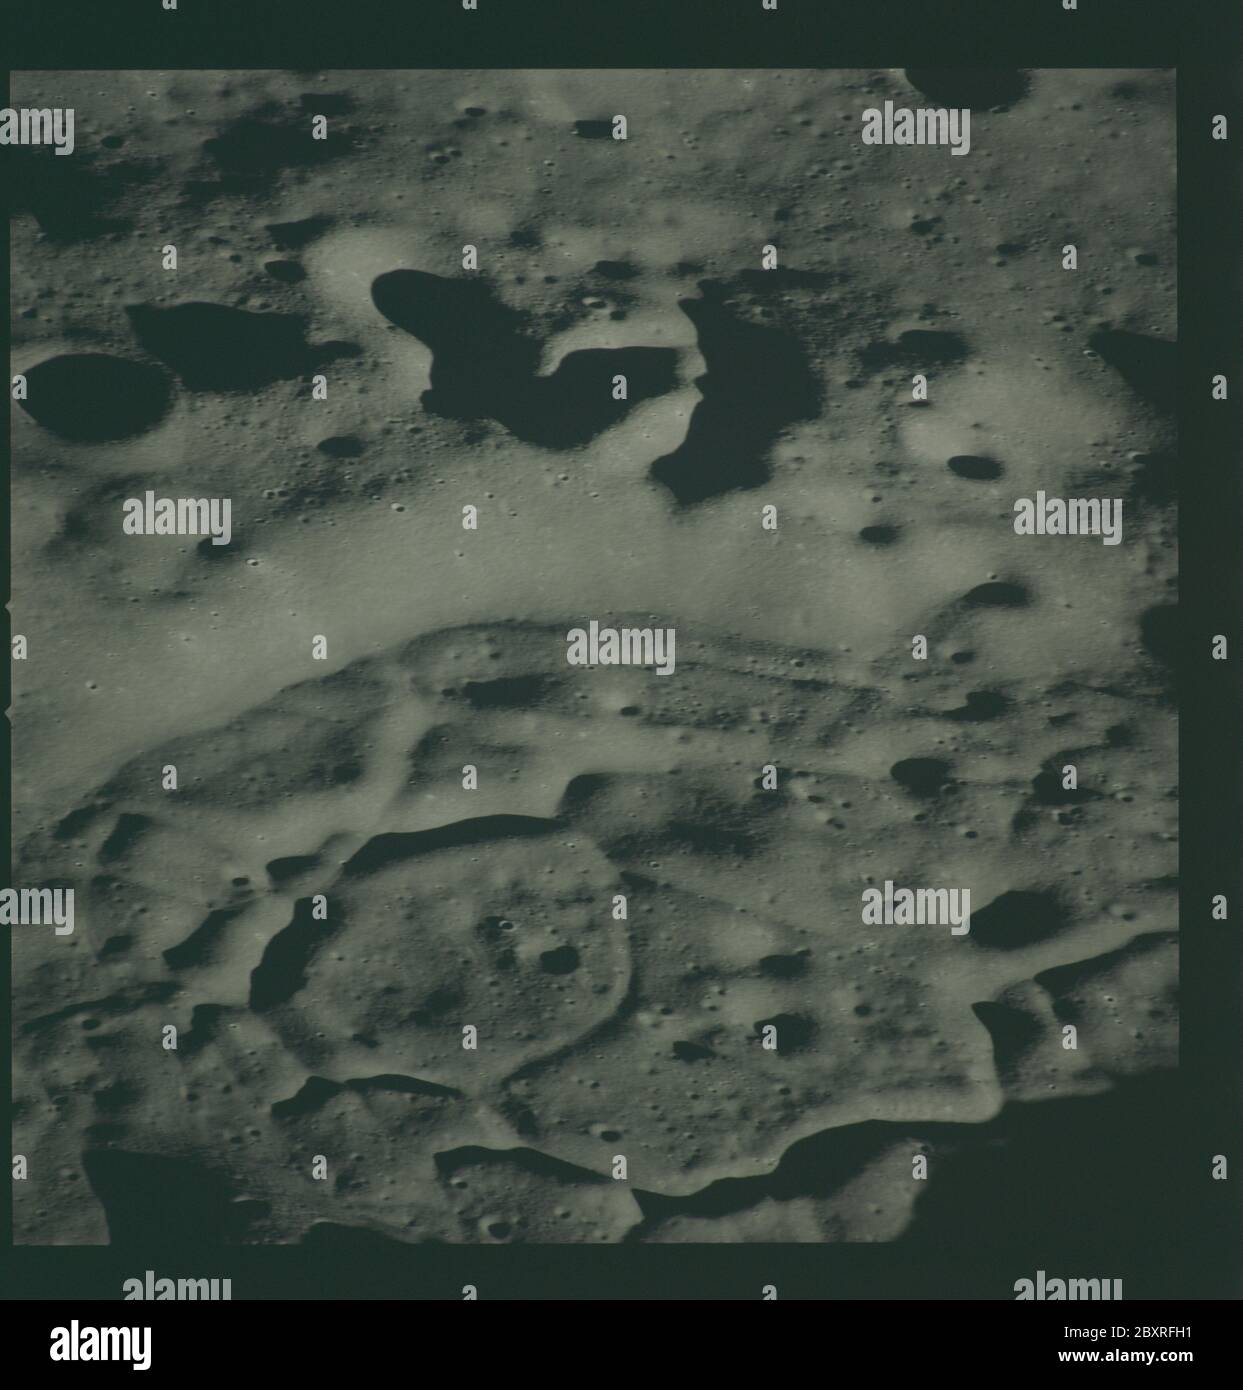 AS14-72-9954 - Apollo 14 - immagine della missione Apollo 14 - Vista a sud-est da un punto ad ovest del cratere Chaplygin.; scopo e contenuto: Il database originale descrive questo come: Descrizione: Vista a sud-est da un punto ad ovest del cratere Chaplygin. Le immagini sono state scattate durante la Rivoluzione 14 della missione Apollo 14. Il caricatore di pellicola originale era etichettato L, il tipo di pellicola era CEX S0-368 (Ektachrome MS, inversione di colore), lente da 500 mm con un'elevazione del sole di 7 gradi. La scala approssimativa della foto è 1:1,360,000. La latitudine del punto principale era 5.5S dalla Longitudine 146.0E, con un'inclinazione della telecamera di 50 gradi e un azi Foto Stock